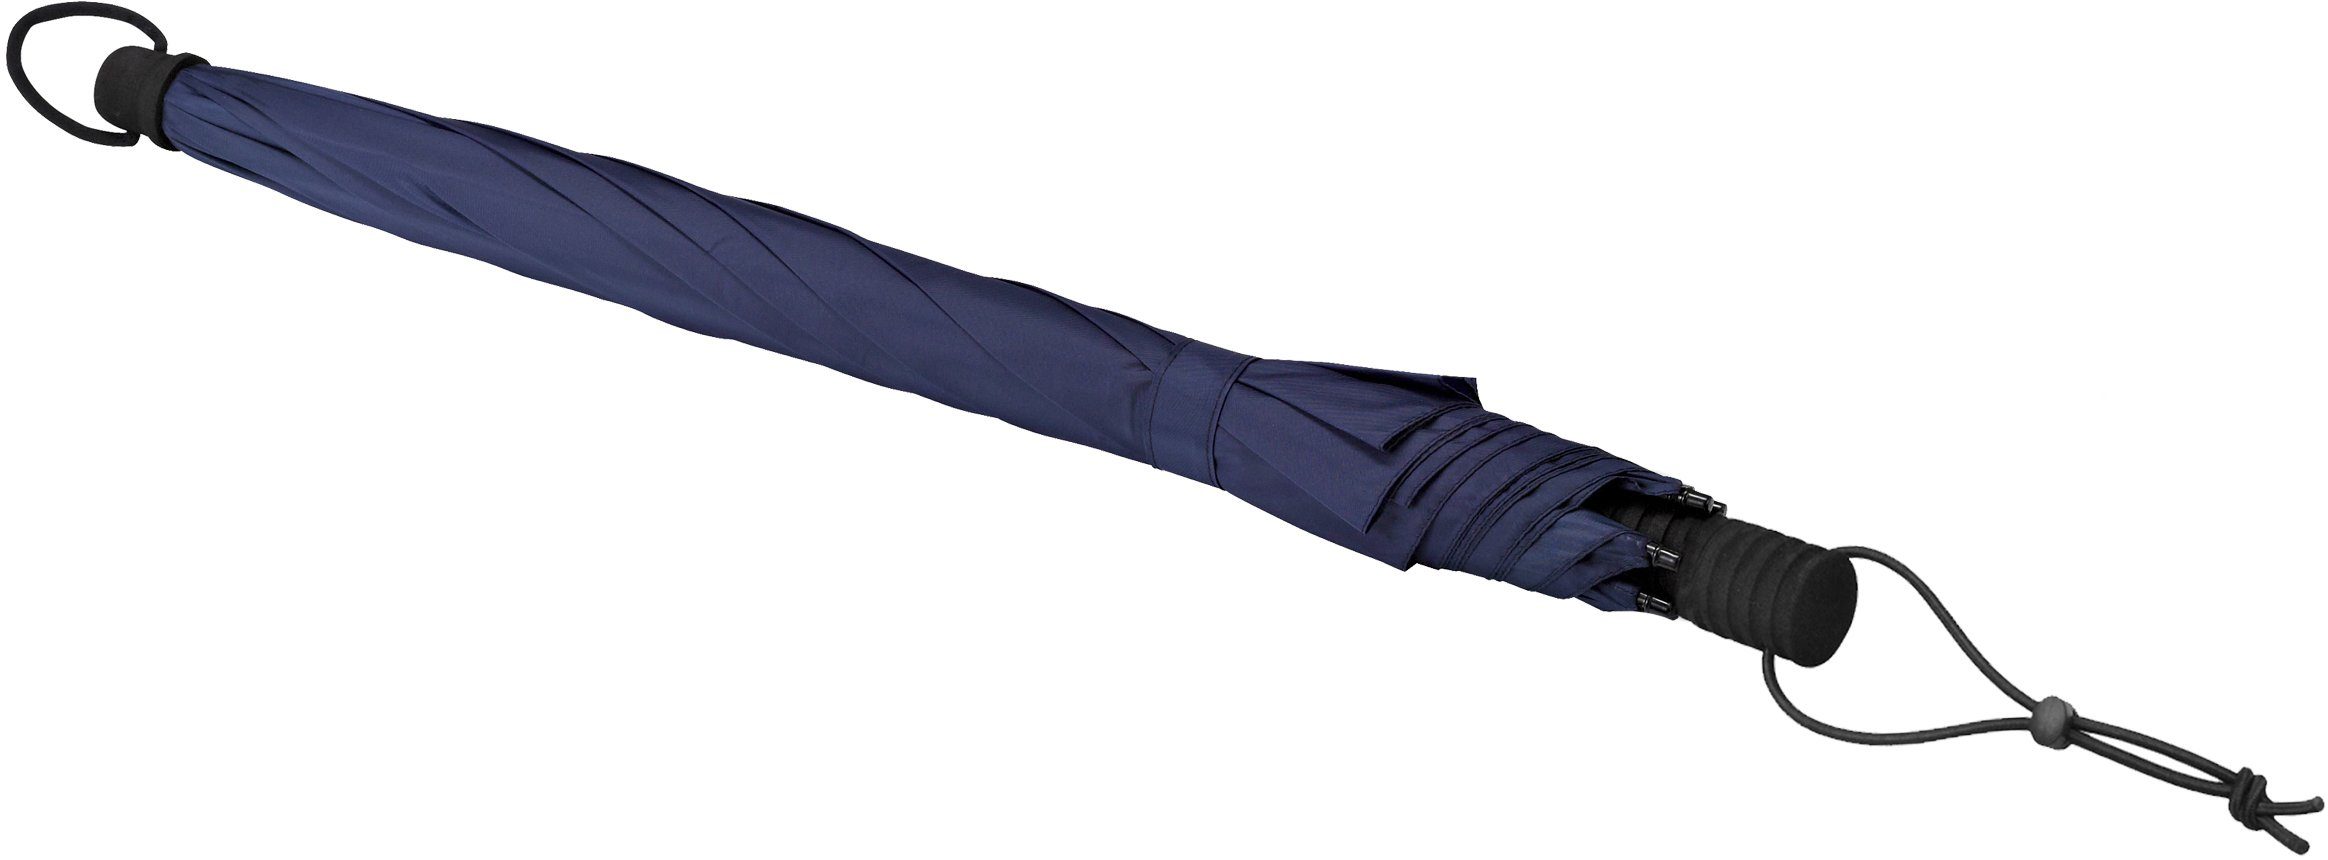 handfrei Stockregenschirm marineblau, Swing handsfree, EuroSCHIRM® tragbar